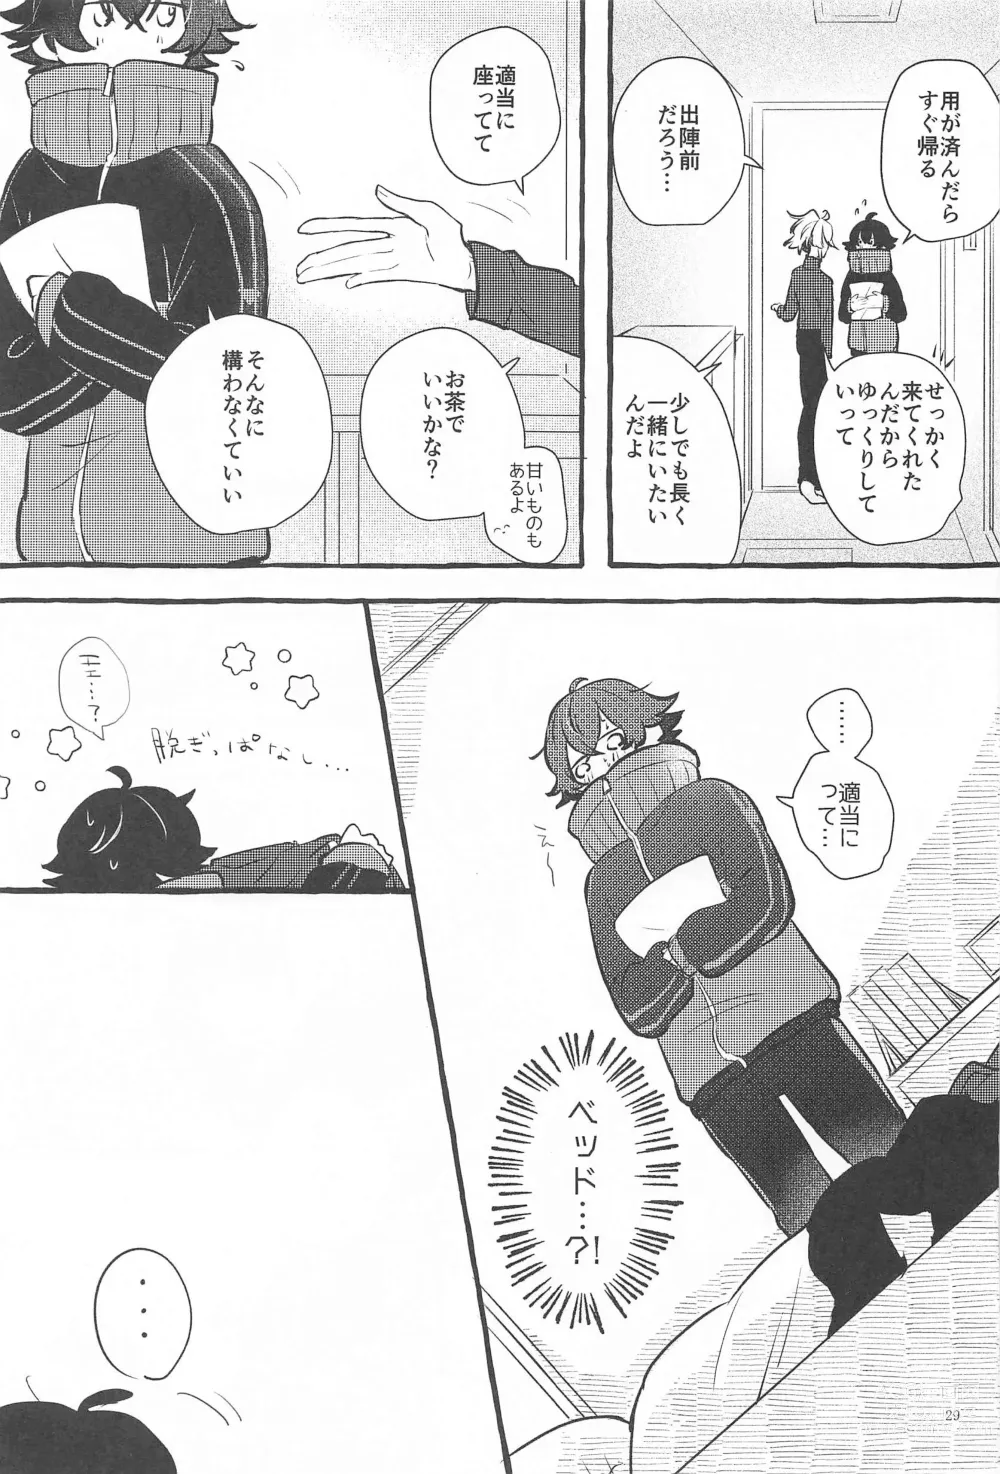 Page 28 of doujinshi Kanete kara no Setsubou de